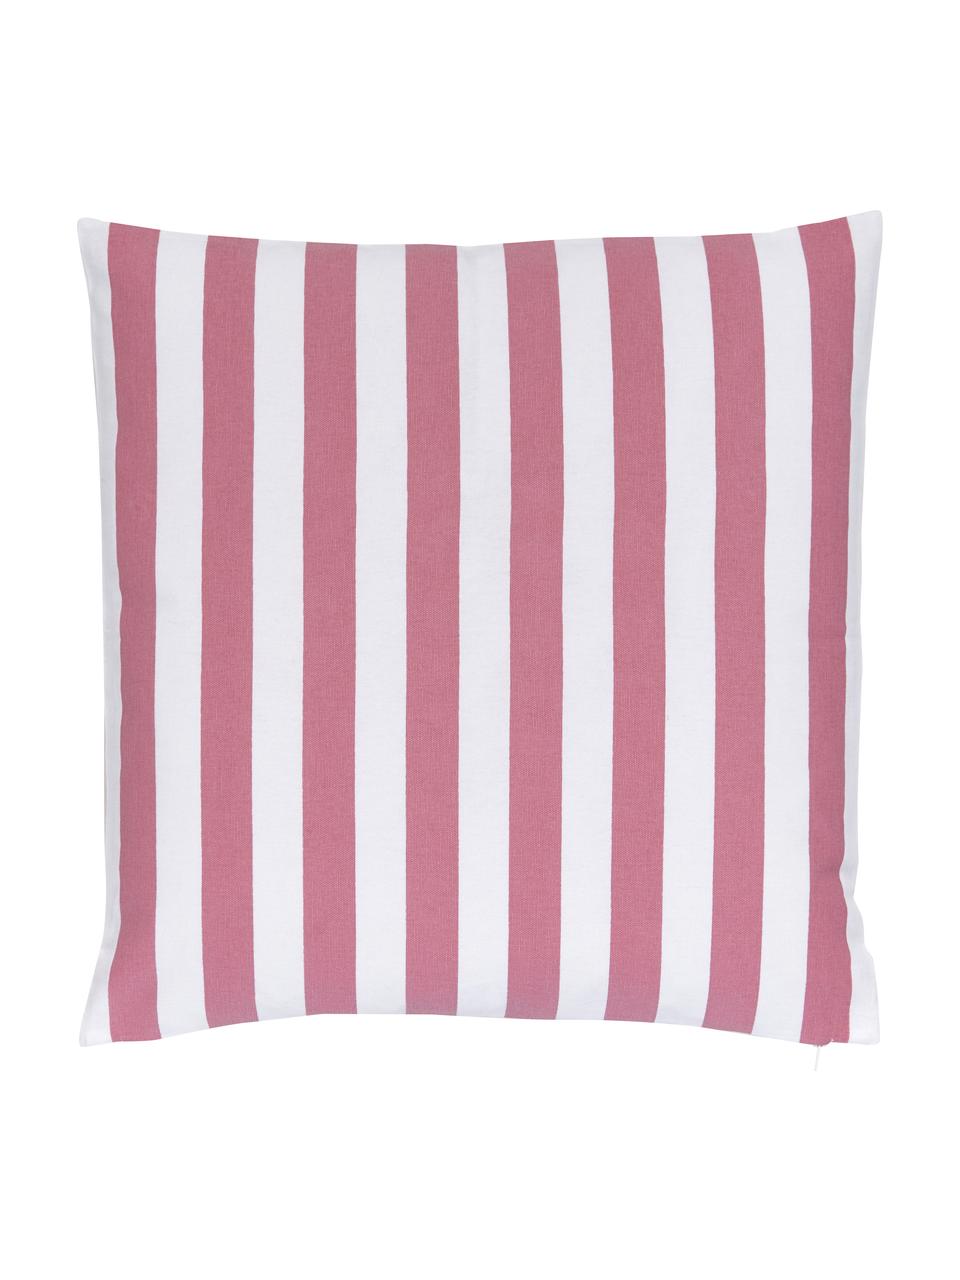 Poszewka na poduszkę Timon, 100% bawełna, Blady różowy, biały, S 40 x D 40 cm